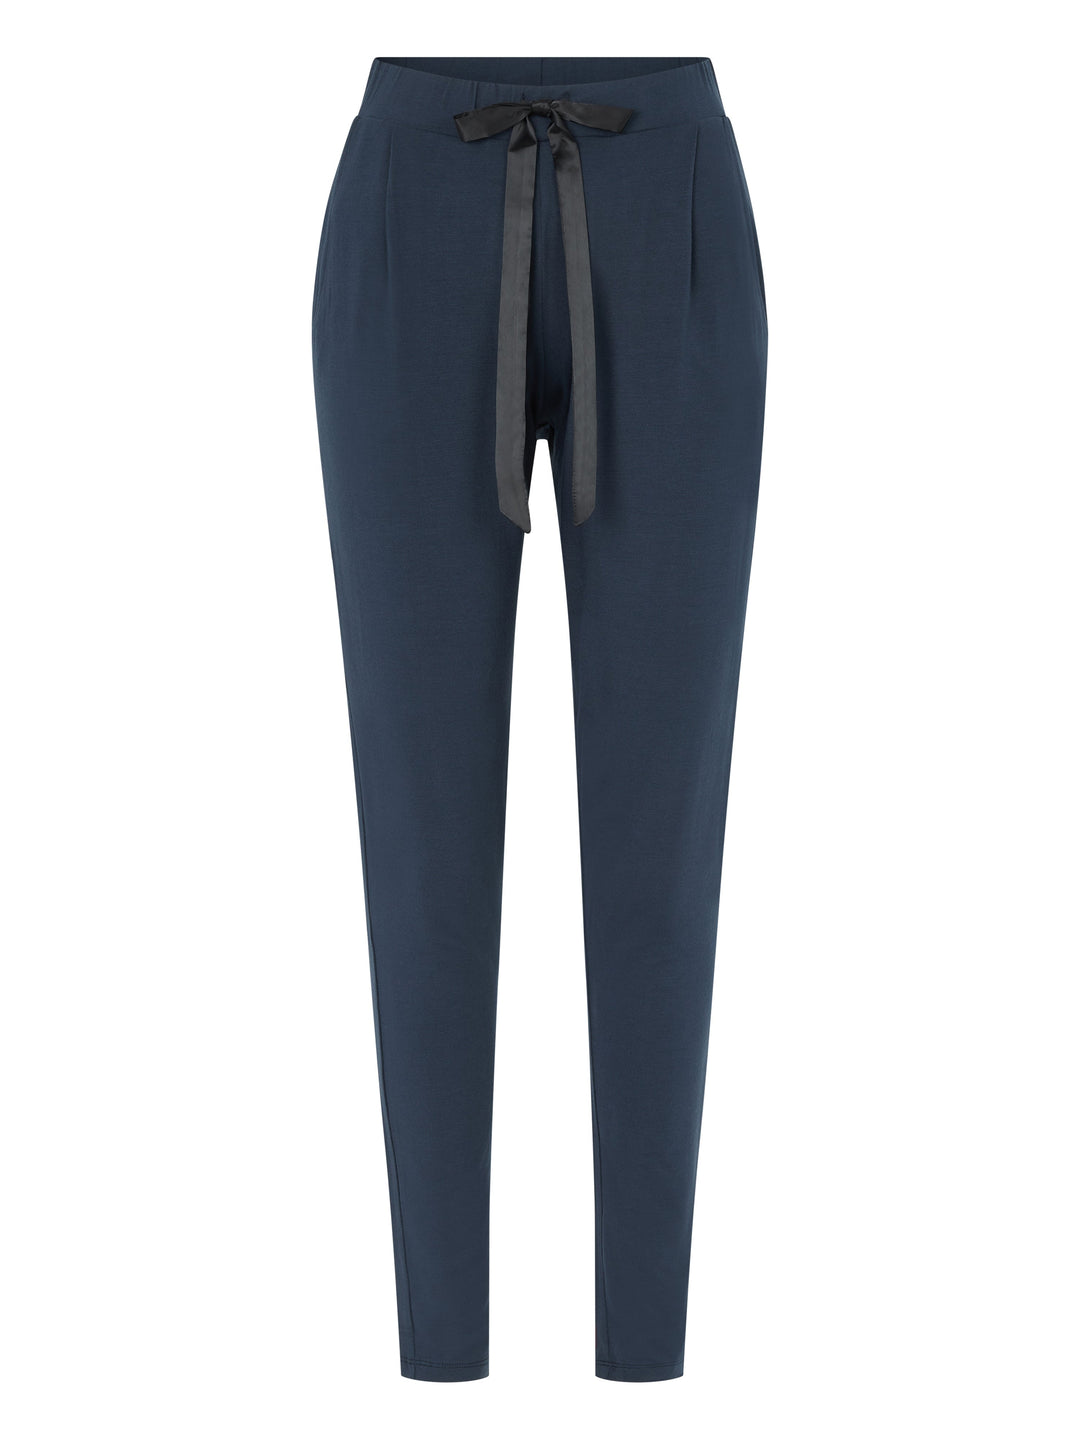 Femilet - Пижамные штаны Lizzy Темно-синие пижамные брюки Femilet